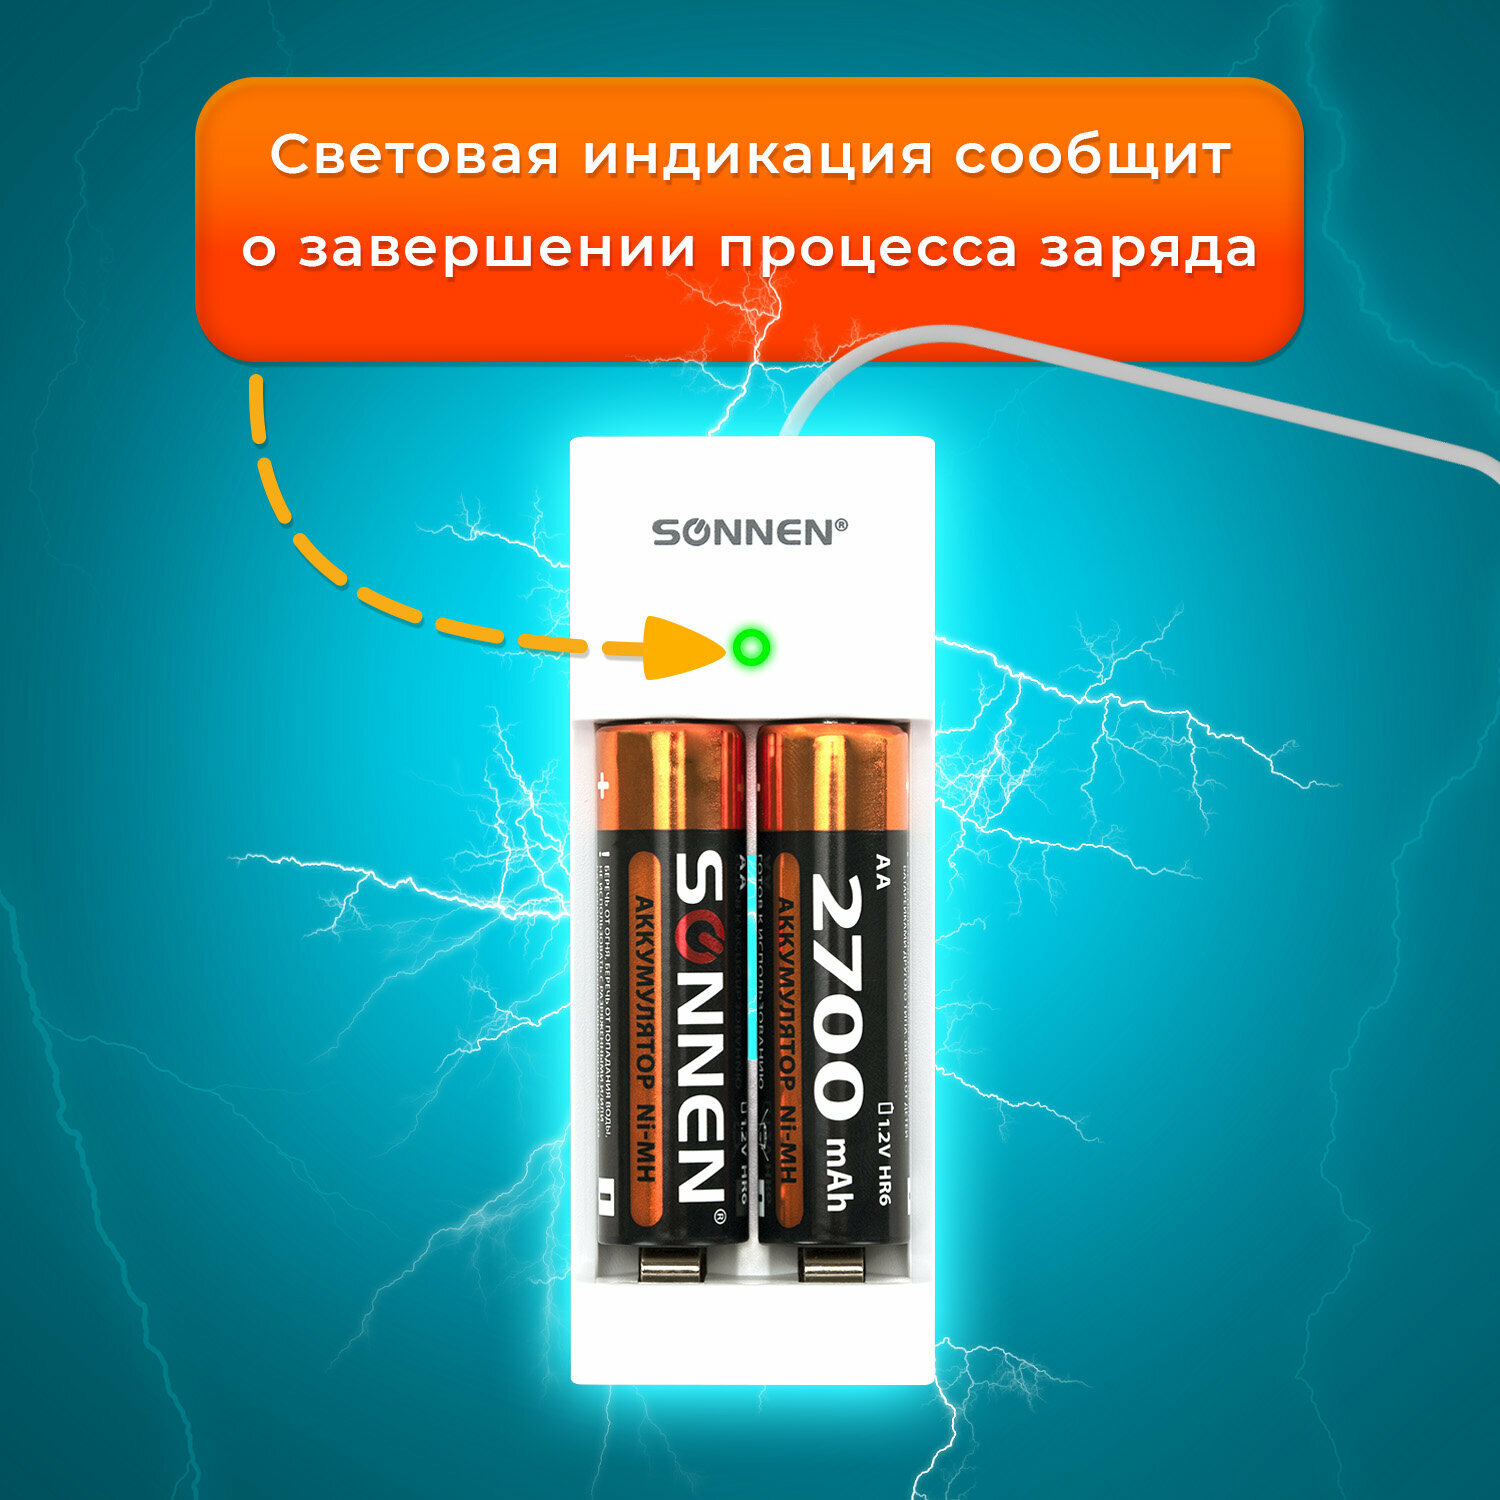 Зарядное устройство для пальчиковых и мизинчиковых батареек зарядка с аккумуляторами 4 уки (2+2) Aa+aaa 2700 mAh + 1000 mAh Sonnen Bc2 455005